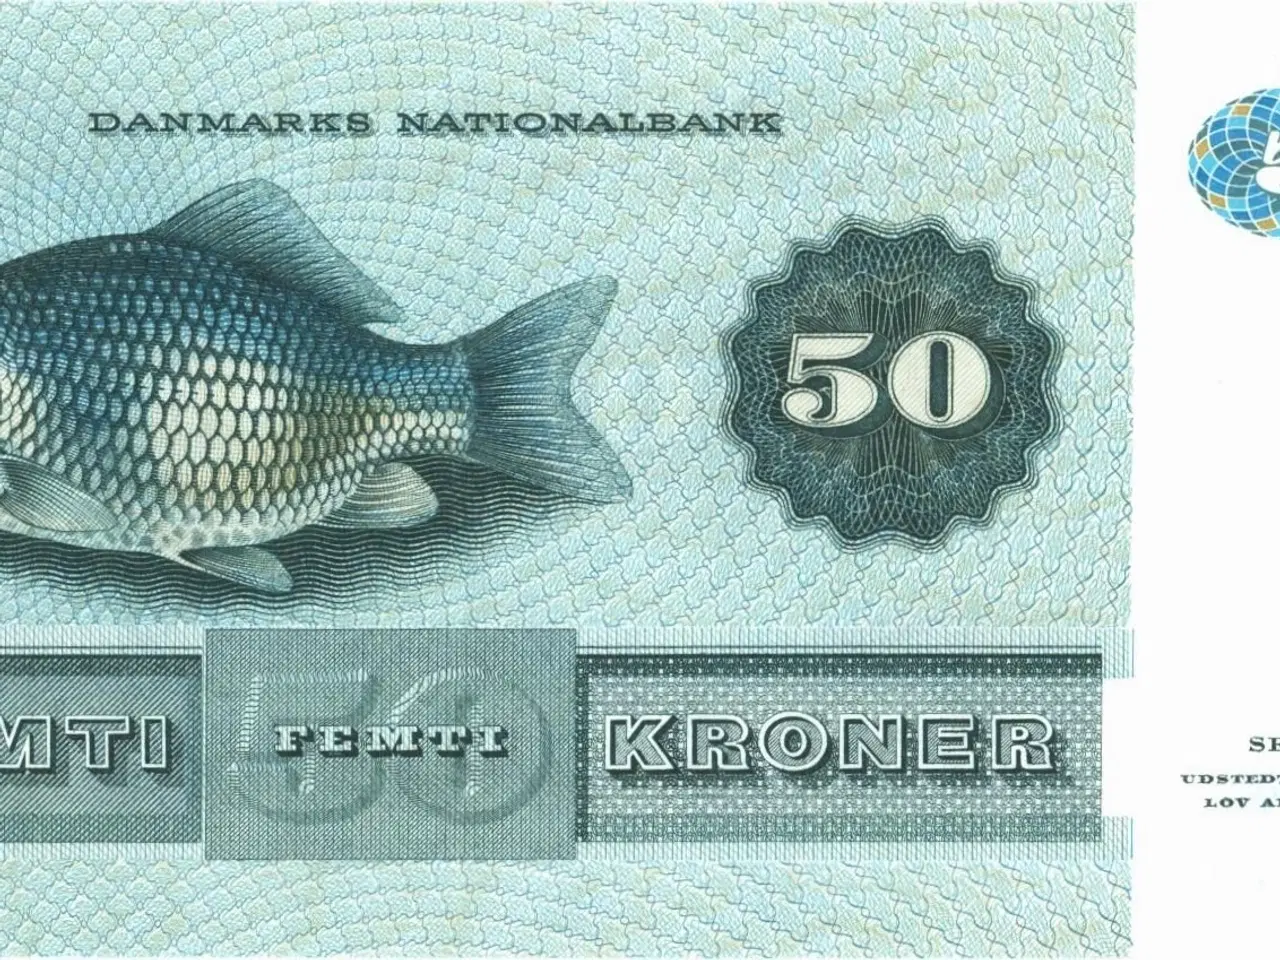 Billede 2 - DK. 50 kr. seddel fra 1995